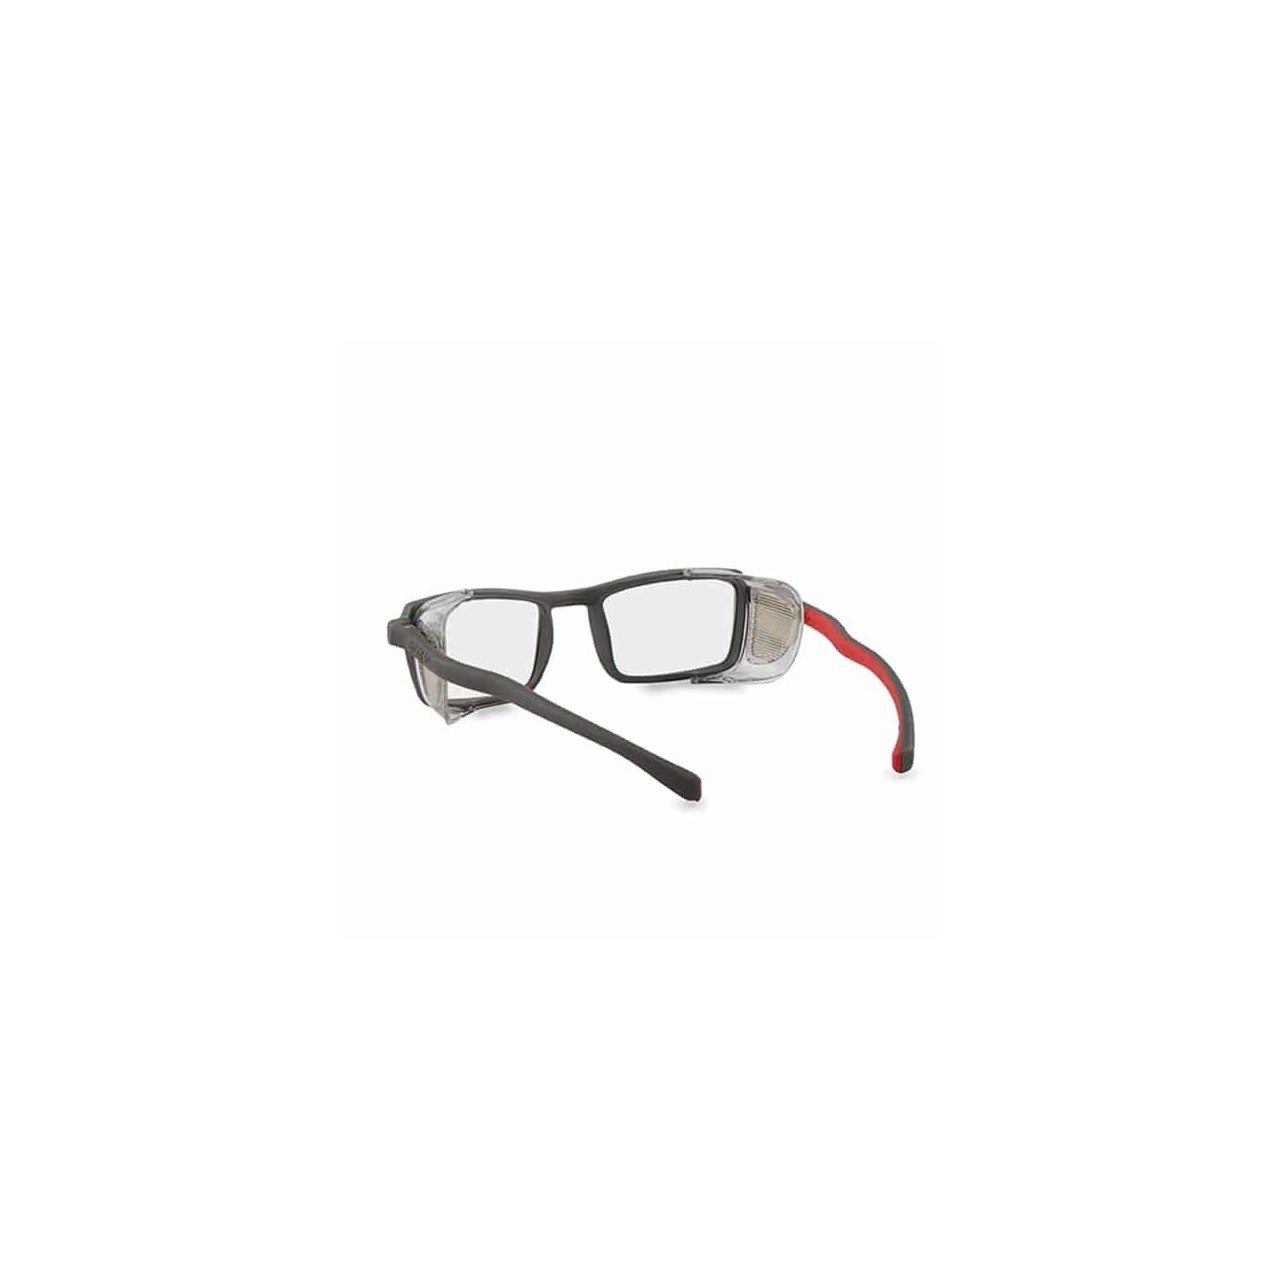 Gafas De seguridad lentes vision trabajo proteccion ojos soldadura  pulidoras New